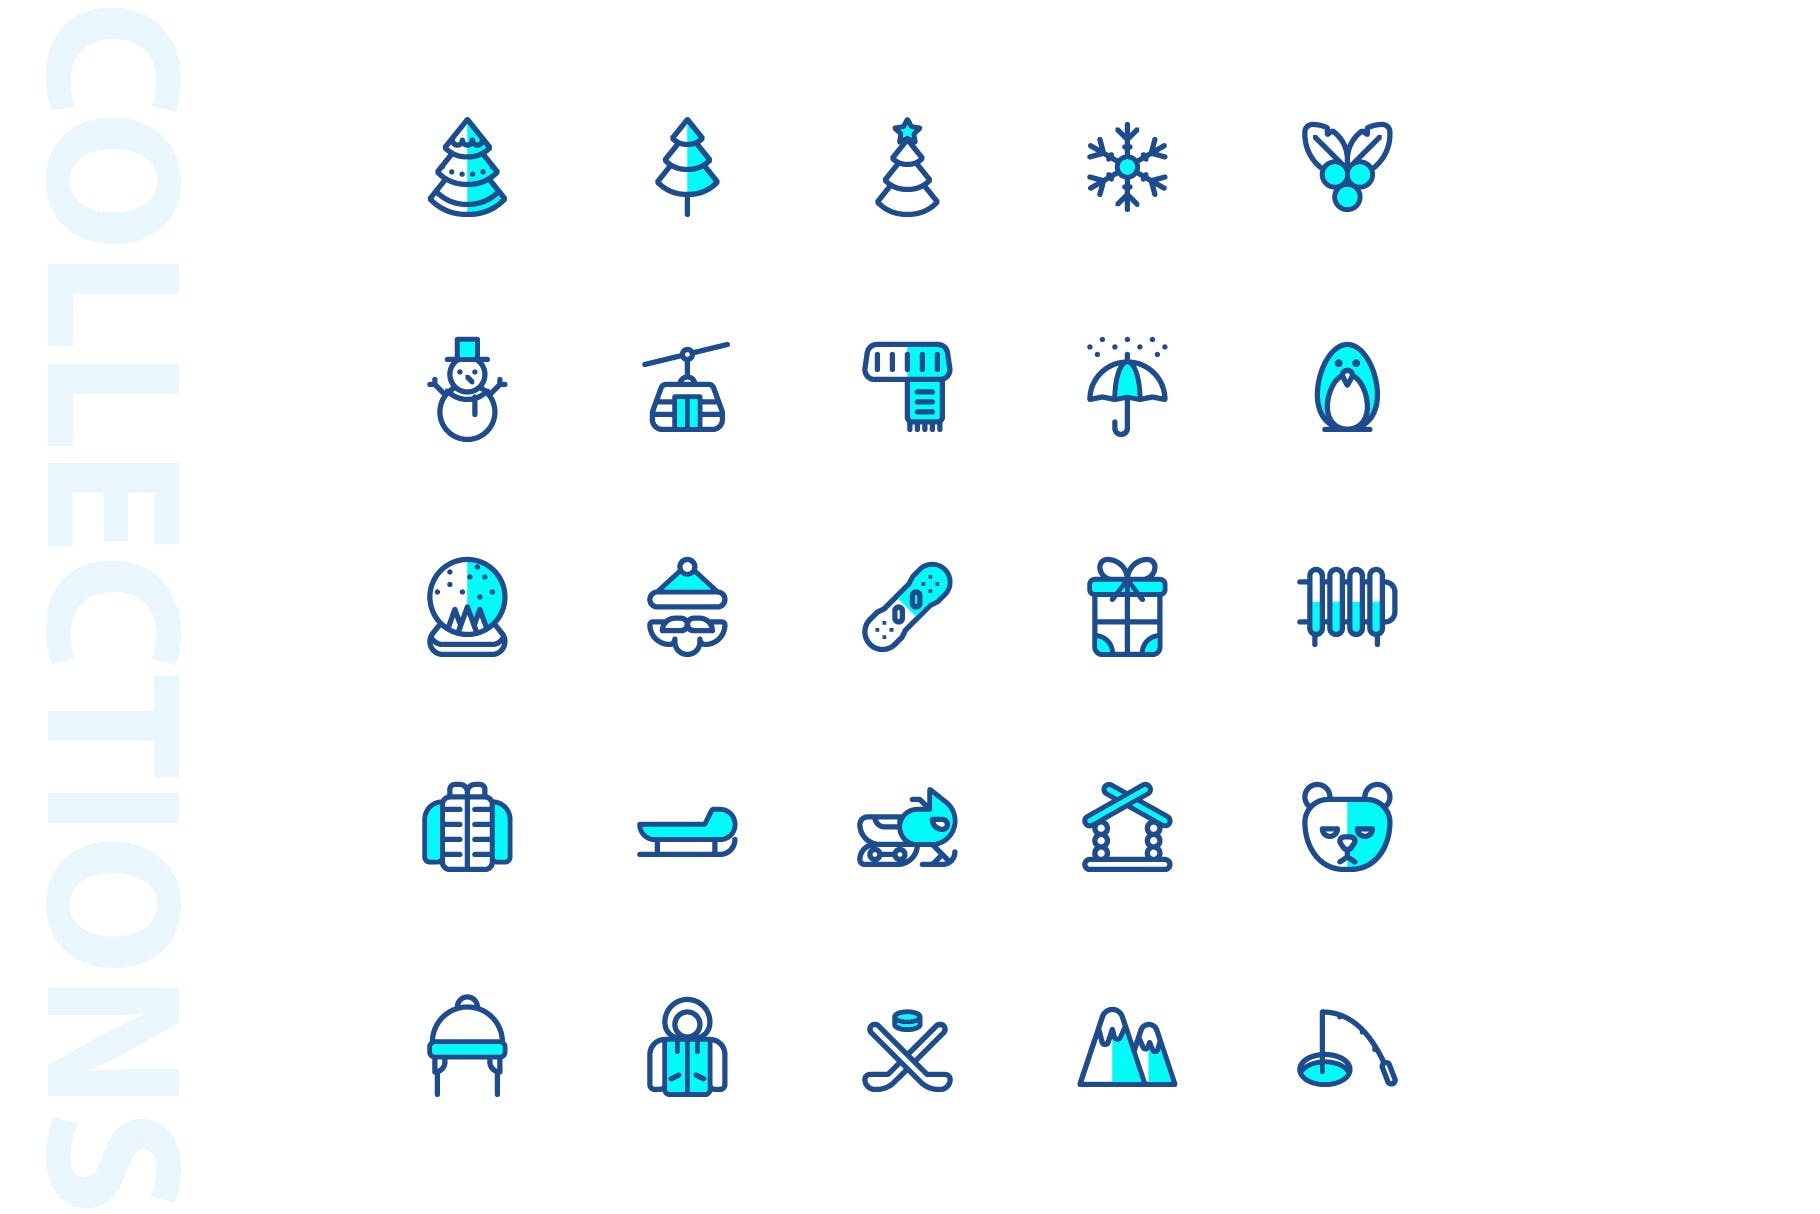 25枚冬天主题双色调矢量蚂蚁素材精选图标v1 Winter Two Tone Icons插图(3)